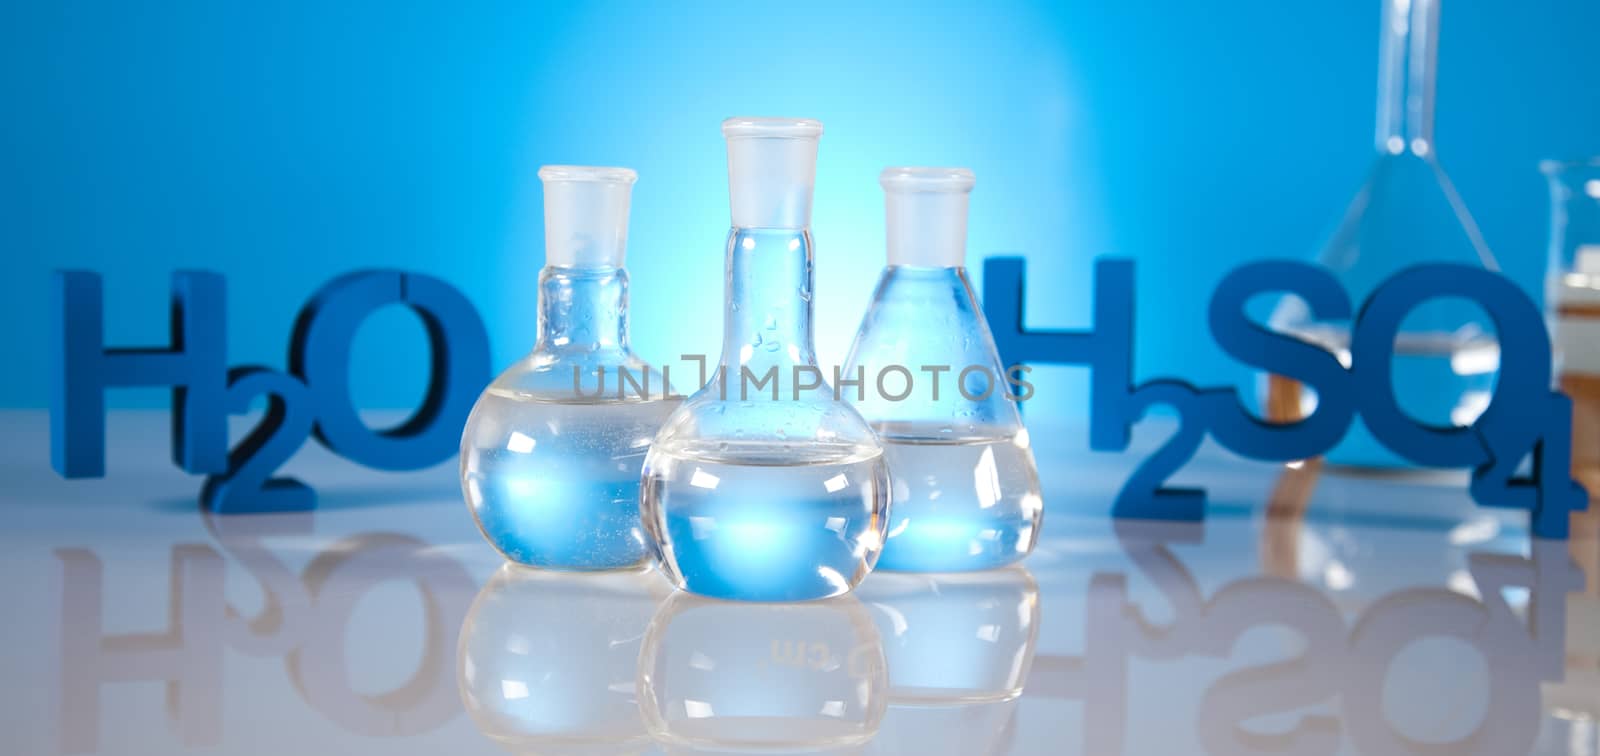 DNA molecules, atom, Laboratory glassware by JanPietruszka